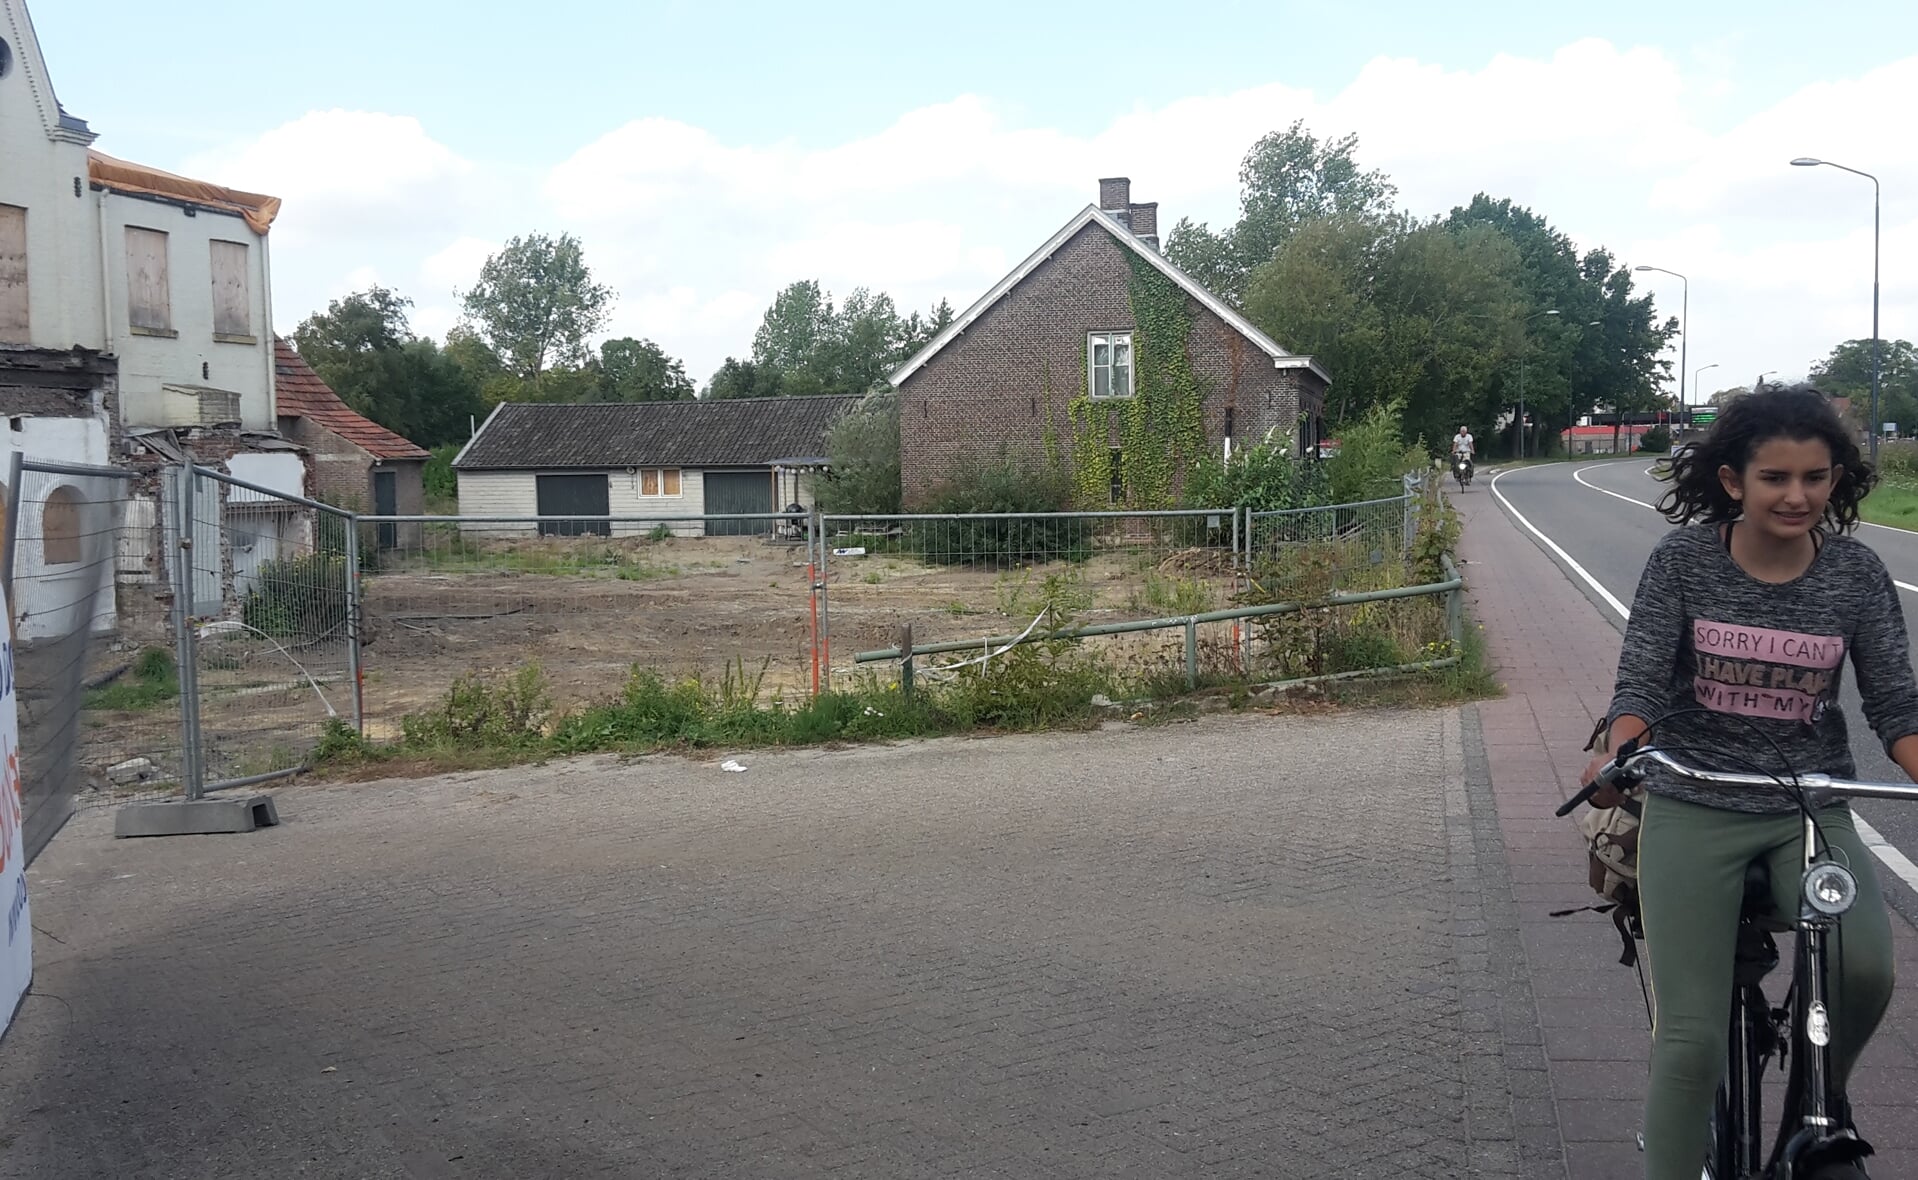 Blik in noordelijke richting ter hoogte van de inrit van de nieuwbouwlocatie Jorishof aan de Eindhovenseweg. De scheiding met de rijbaan voor autoverkeer bestaat uit niet meer dan een witte streep. (Foto: Henk van Weert, 2018).